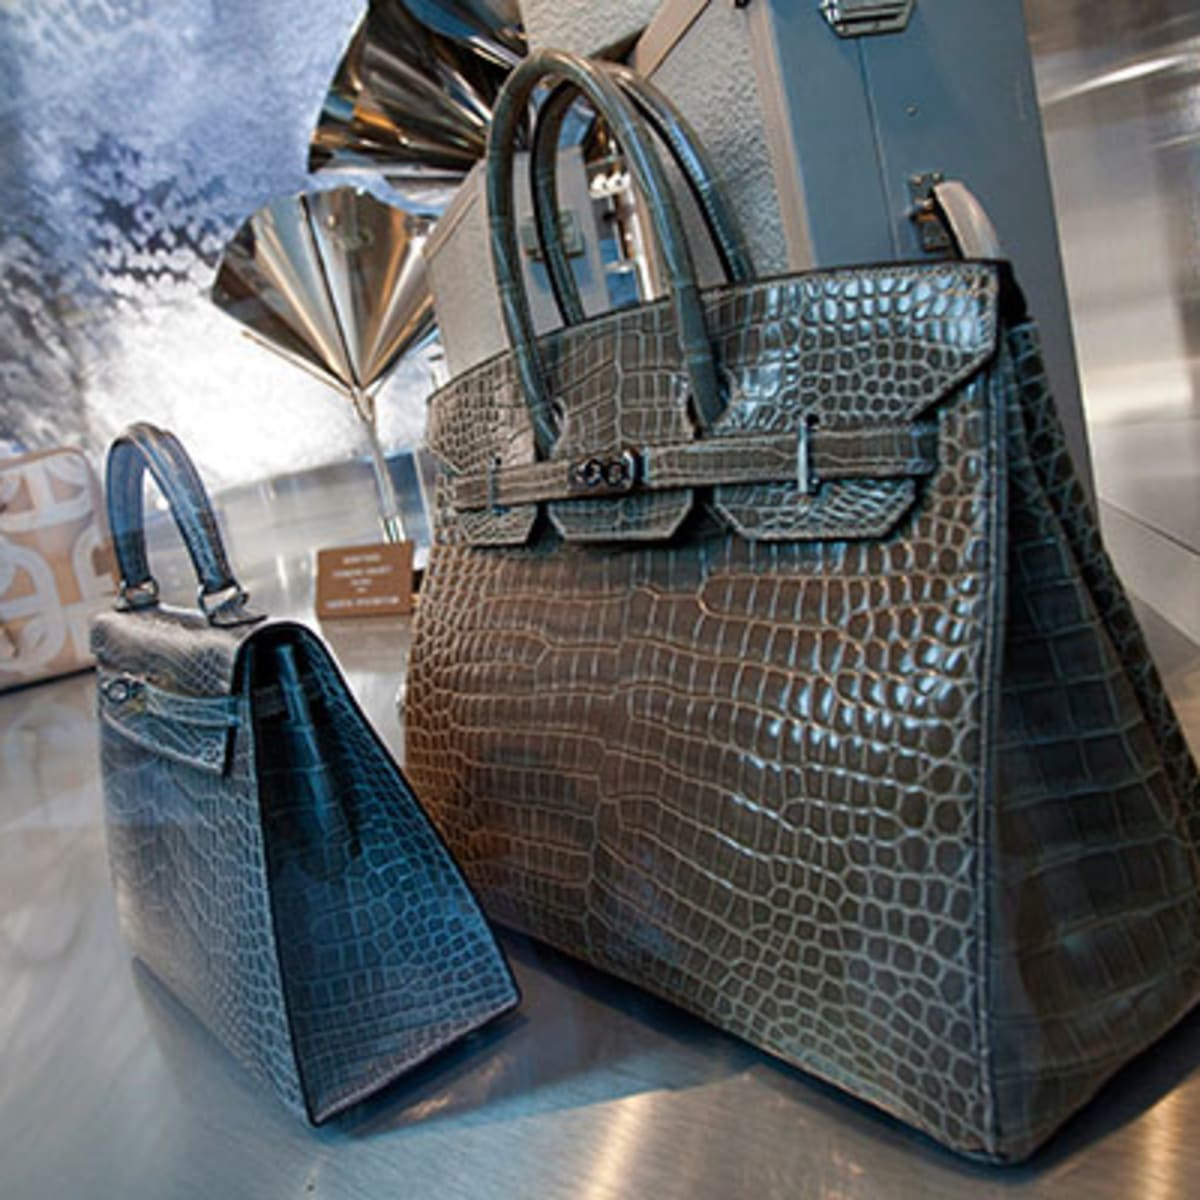 Hermes Birkin: A Good Bag but Even Better Investment - TheStreet